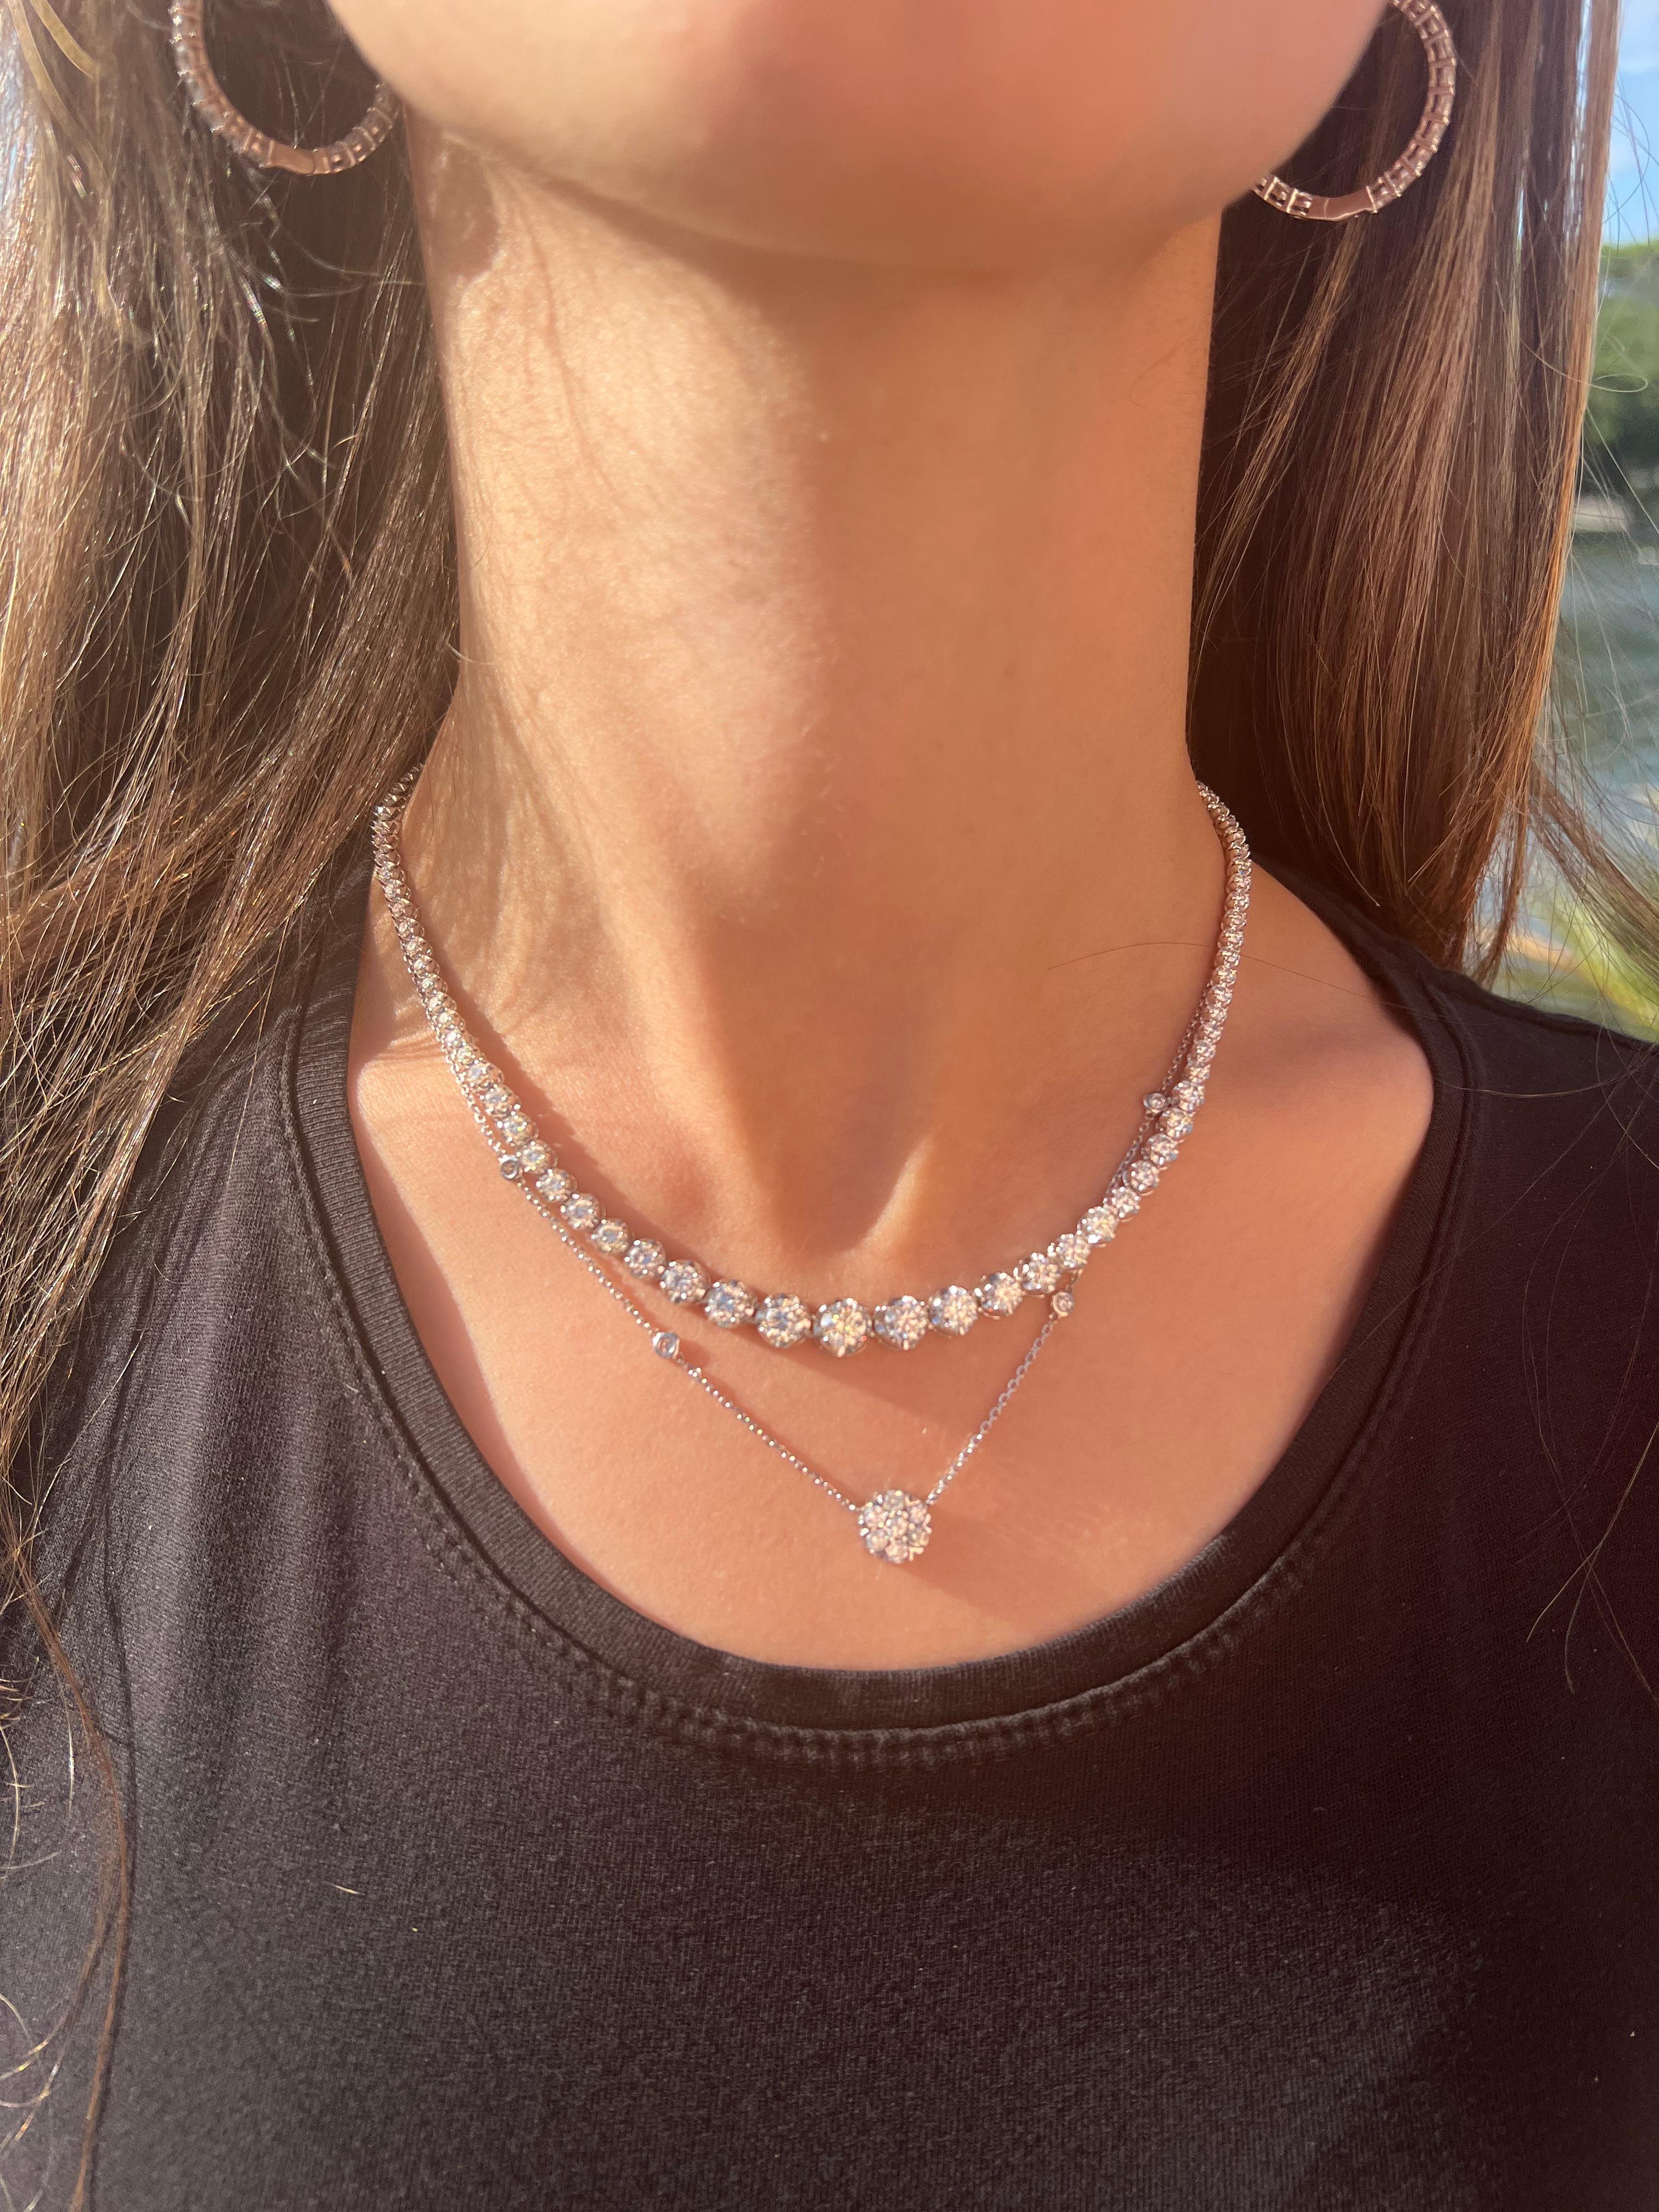 Diese einzigartige 10,23 Karat abgestufte Diamant-Tennis-Halskette ist ein echter Hingucker. Jeder Diamant ist in einer Kronenzackenfassung gefasst, die ein Maximum an Brillanz und Glanz bietet. Der Mittelstein ist der größte Diamant (0,70 ct), der